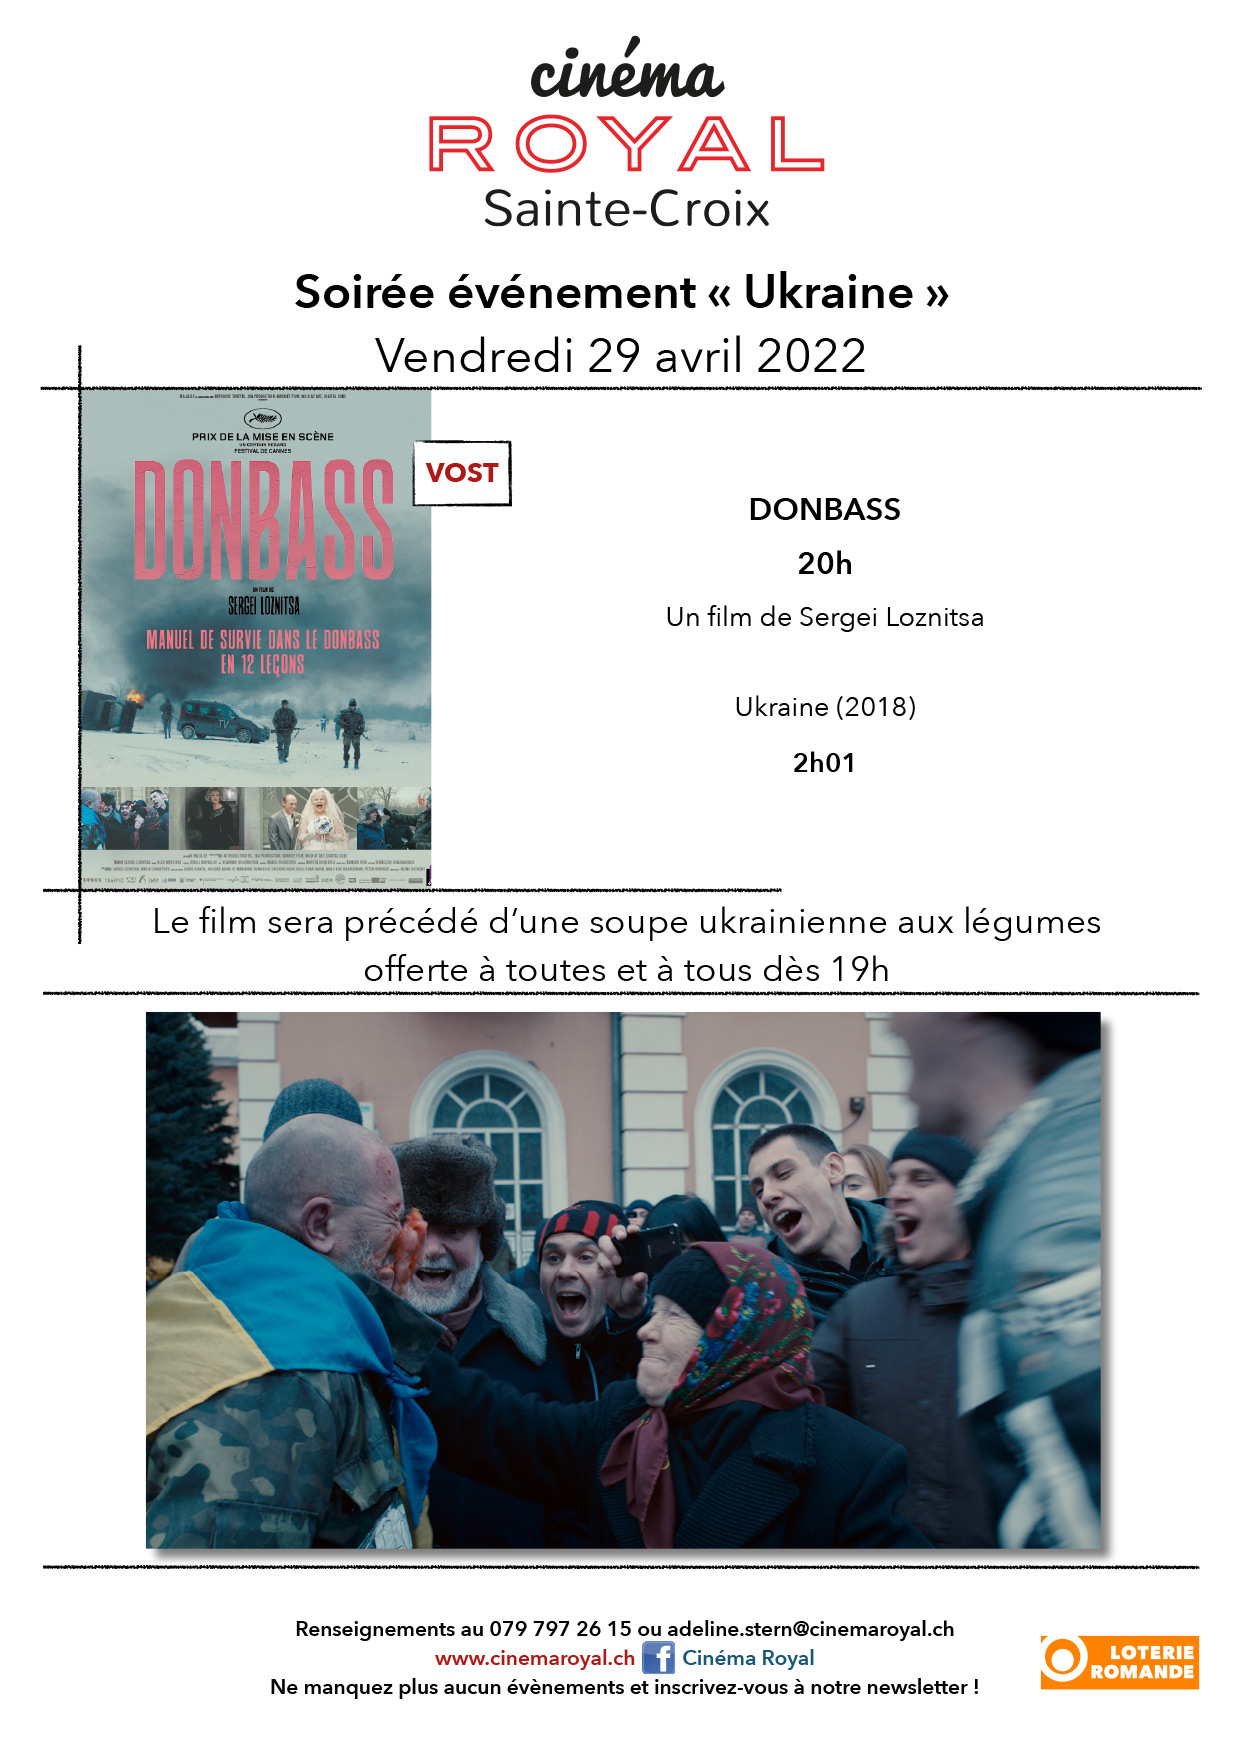 Donbass affiche event sans invites